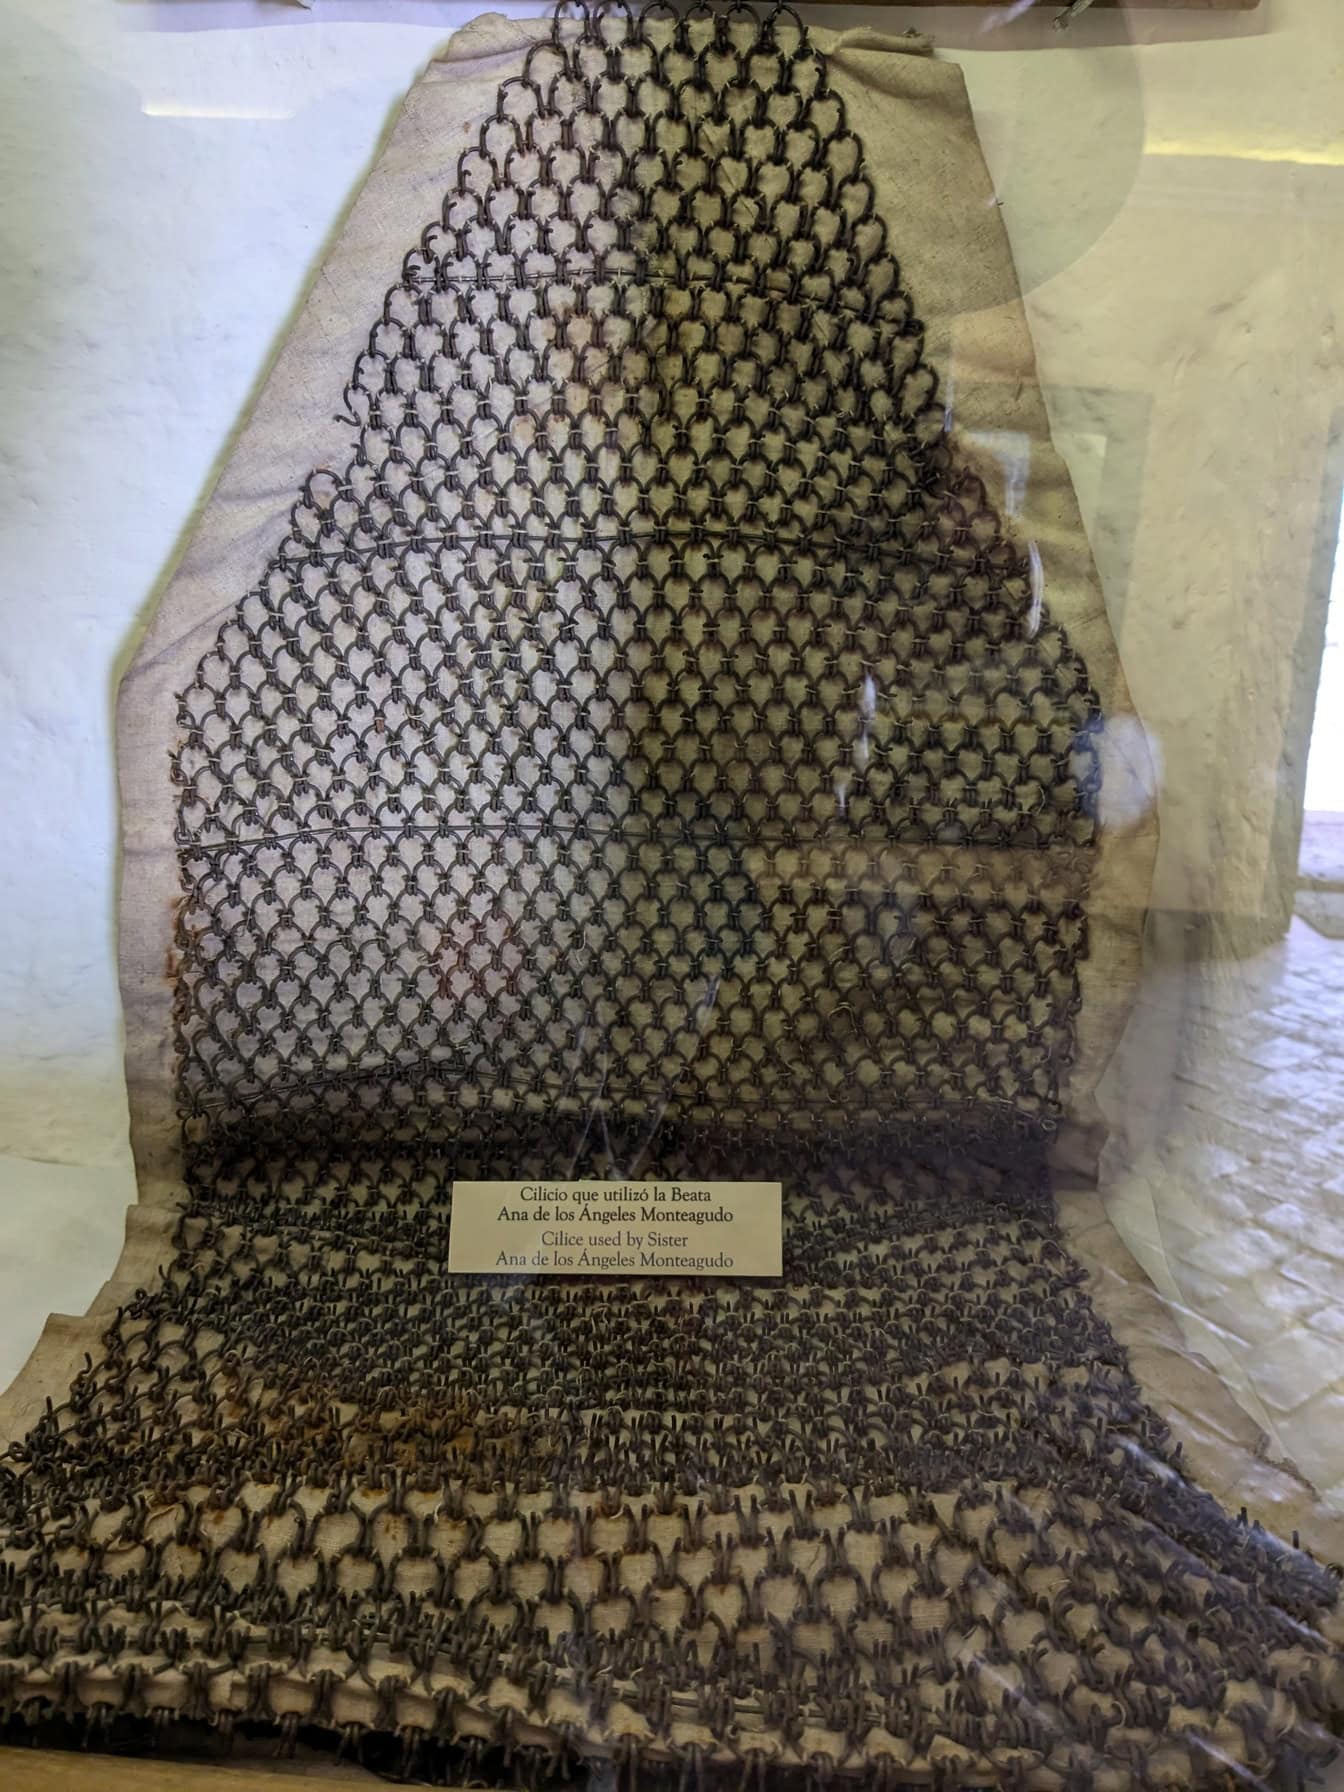 아나 데 로스 안젤로스 몬테아구도 수녀가 사용하던 쇠사슬로 만든 옷이 페루 박물관에 전시되어 있다